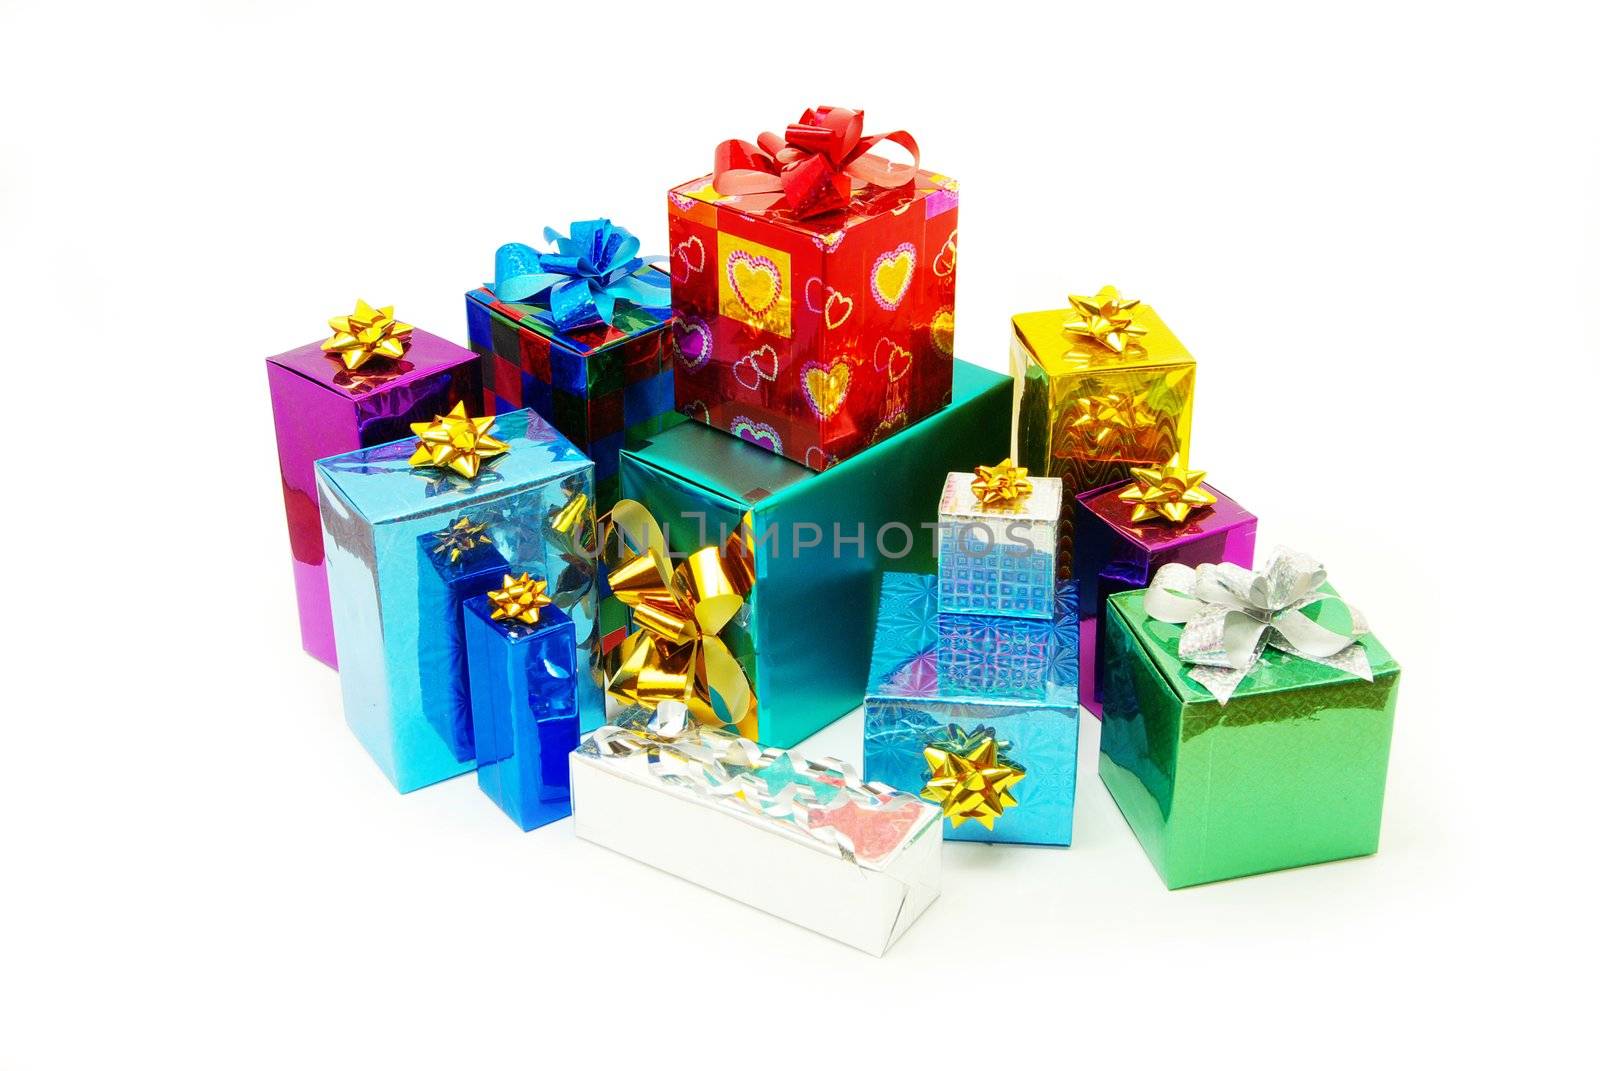  gifts  by Pakhnyushchyy